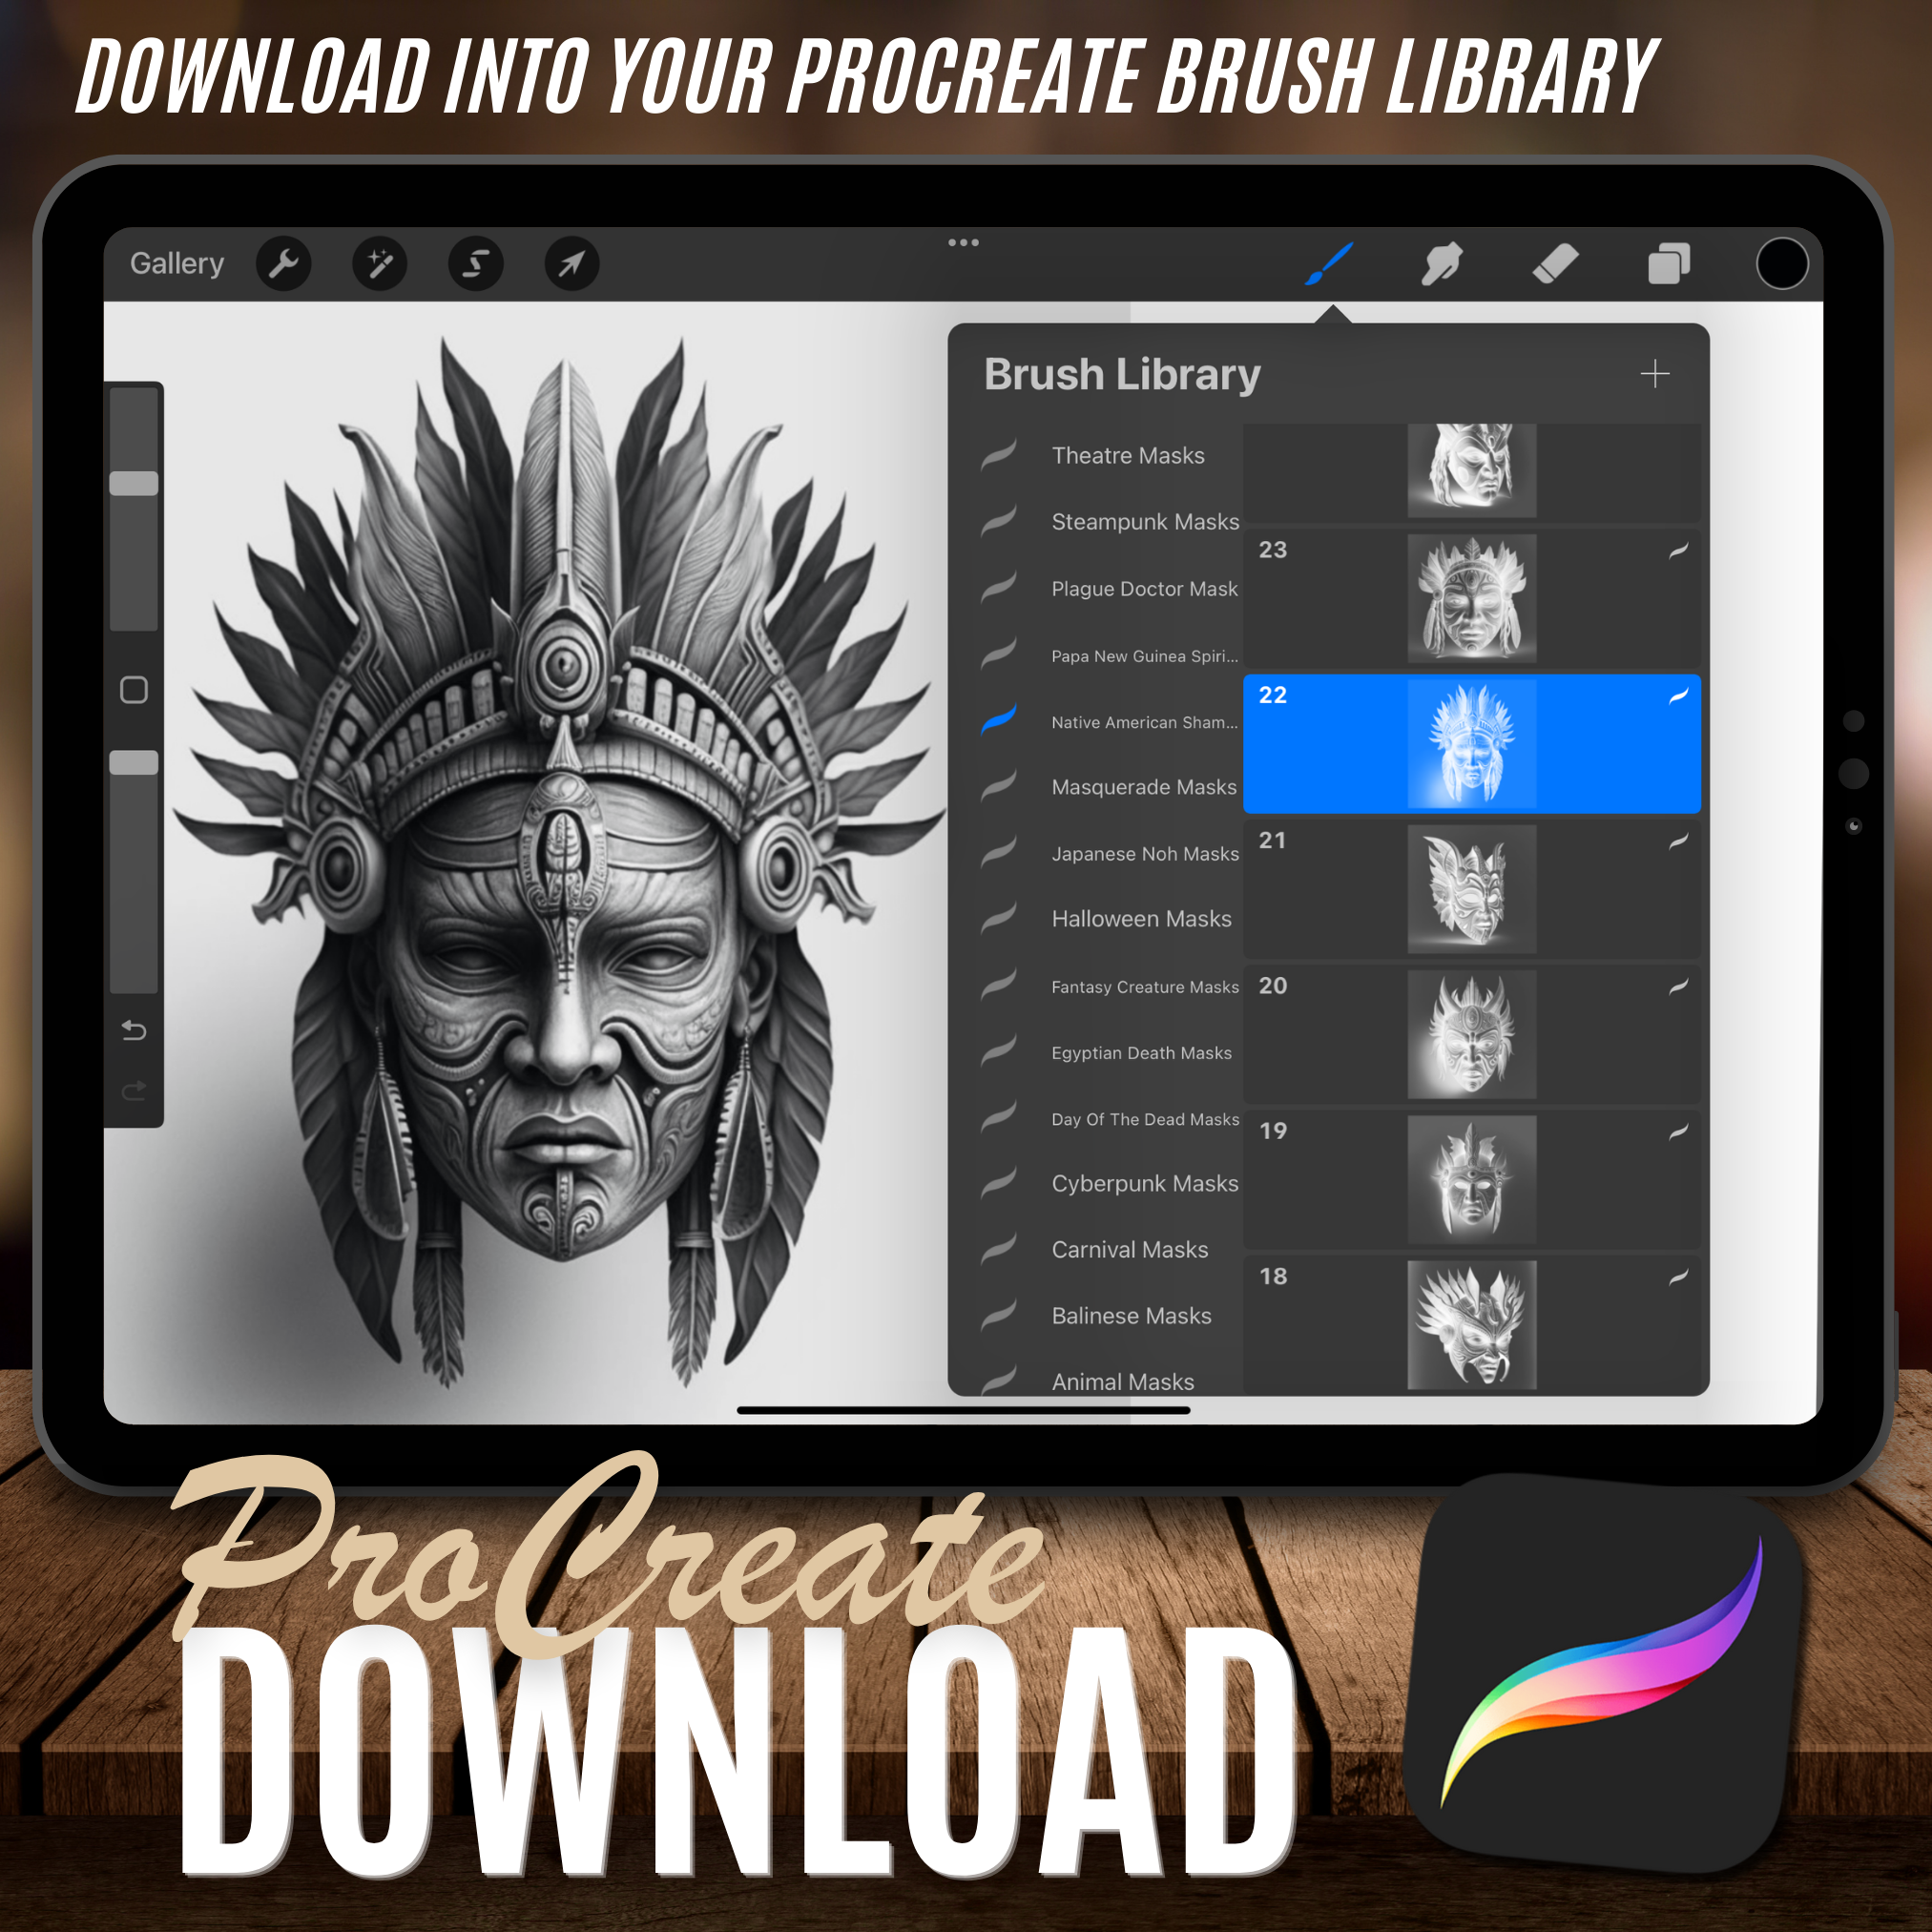 Digitale Referenzdesignsammlung mit Schamanenmasken der amerikanischen Ureinwohner: 50 Procreate- und Skizzenbuchbilder